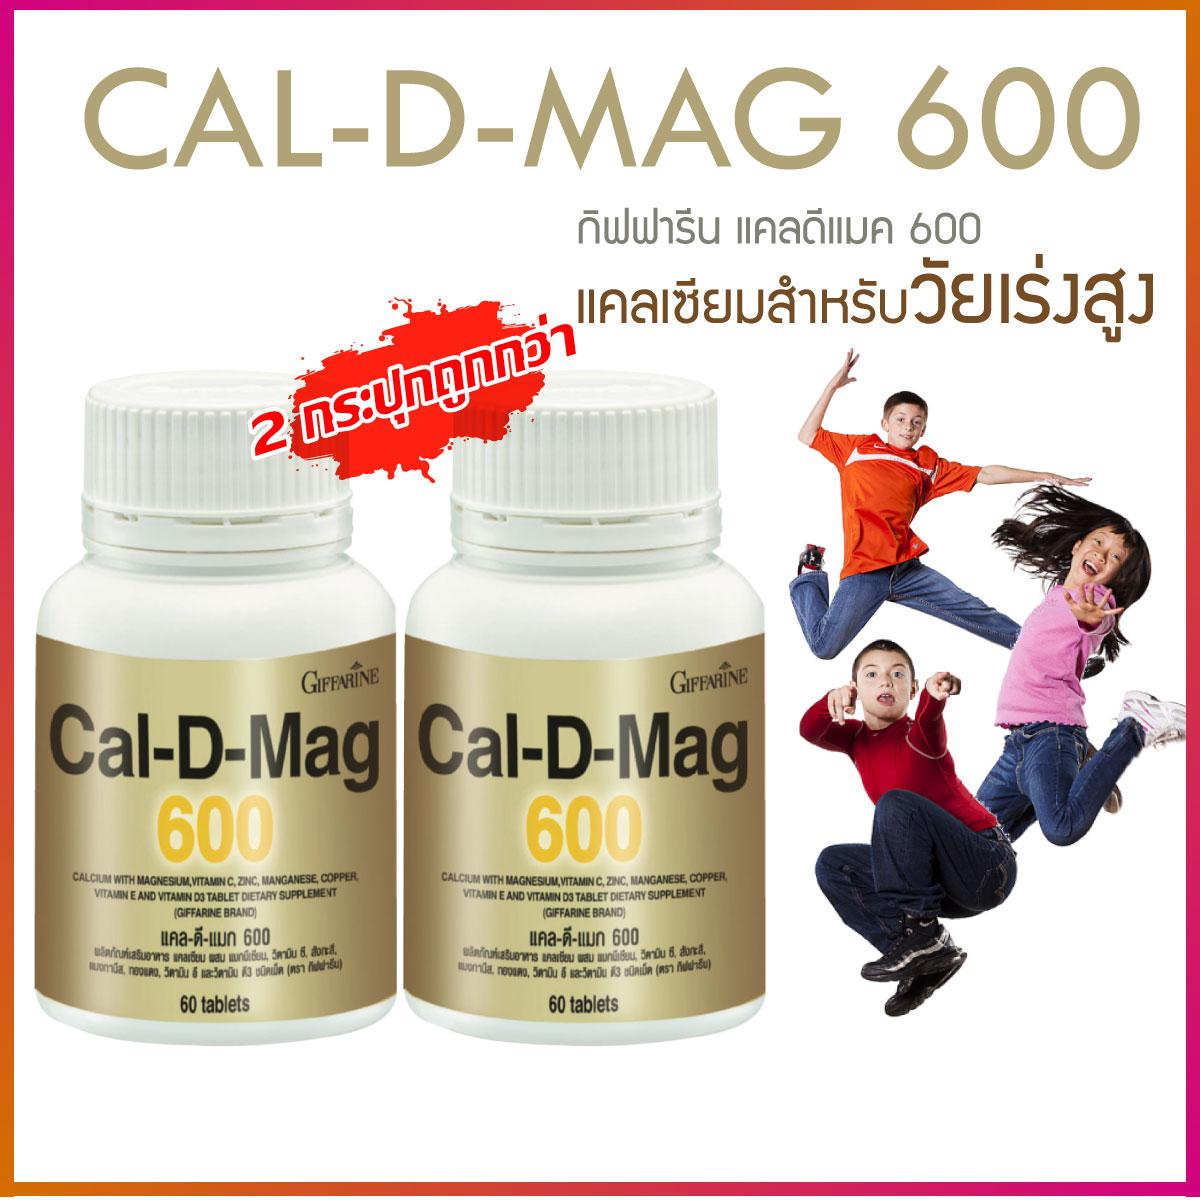 แคลเซียม Cal D MAG 600 ( 2 กระปุก ) เพิ่มความสูง อาหารเสริมบำรุงกระดูกและข้อ เสริมสร้างกระดูกให้แข็งแรง ปริมาณรวม 120 แคปซูล